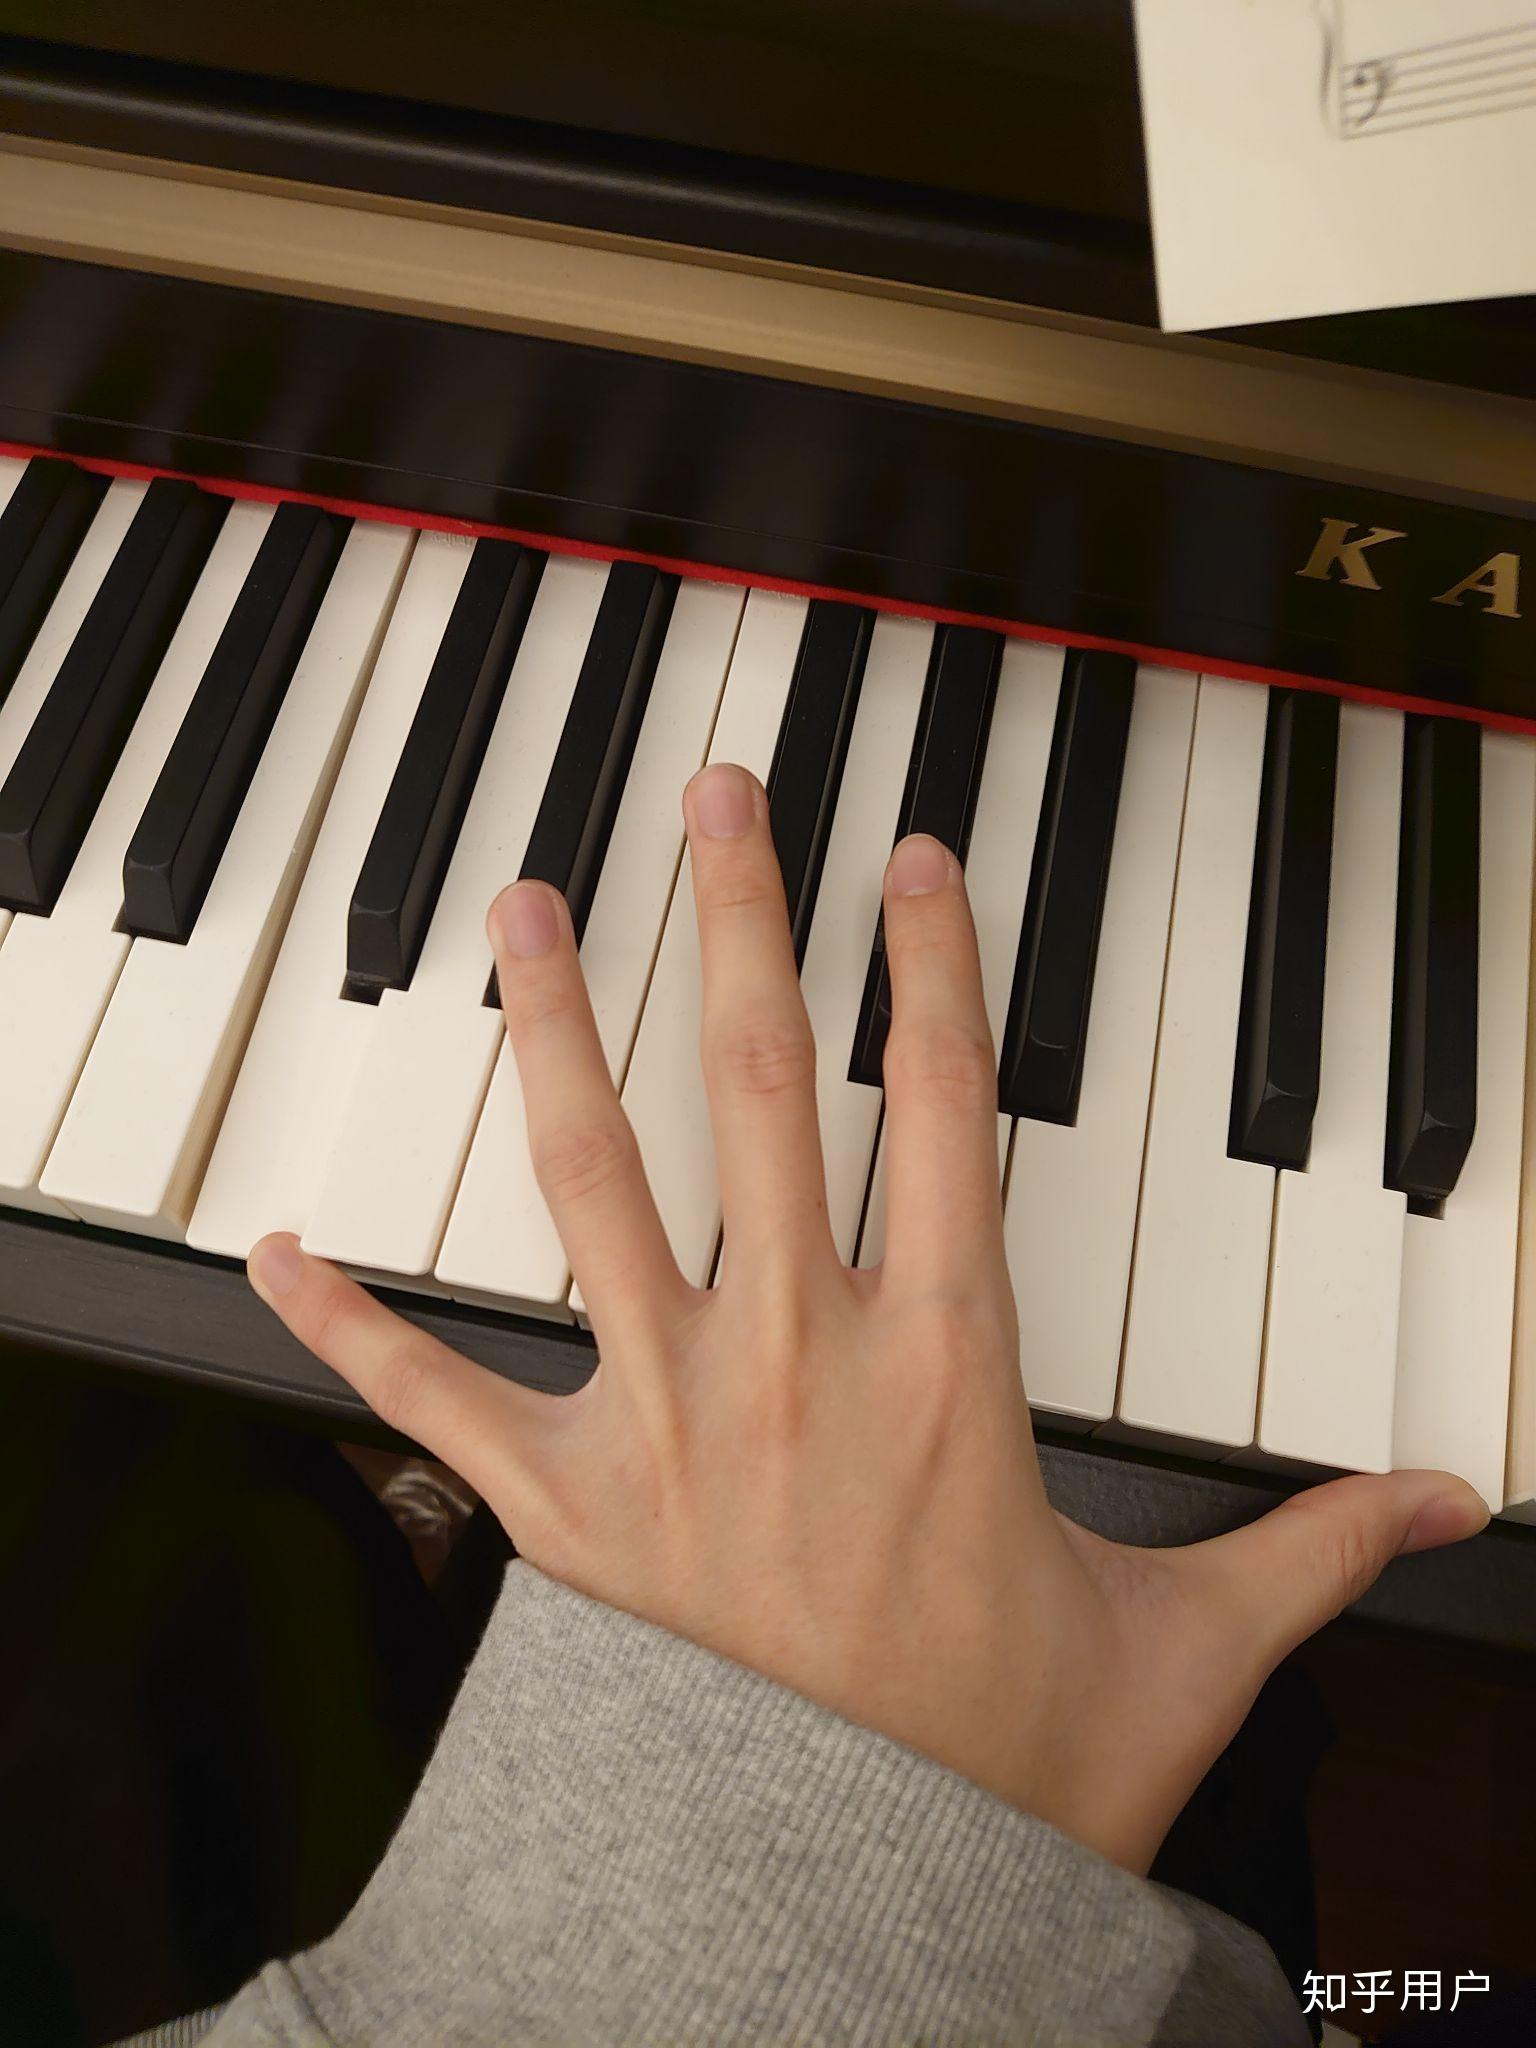 你的手指在钢琴上能跨多少个度